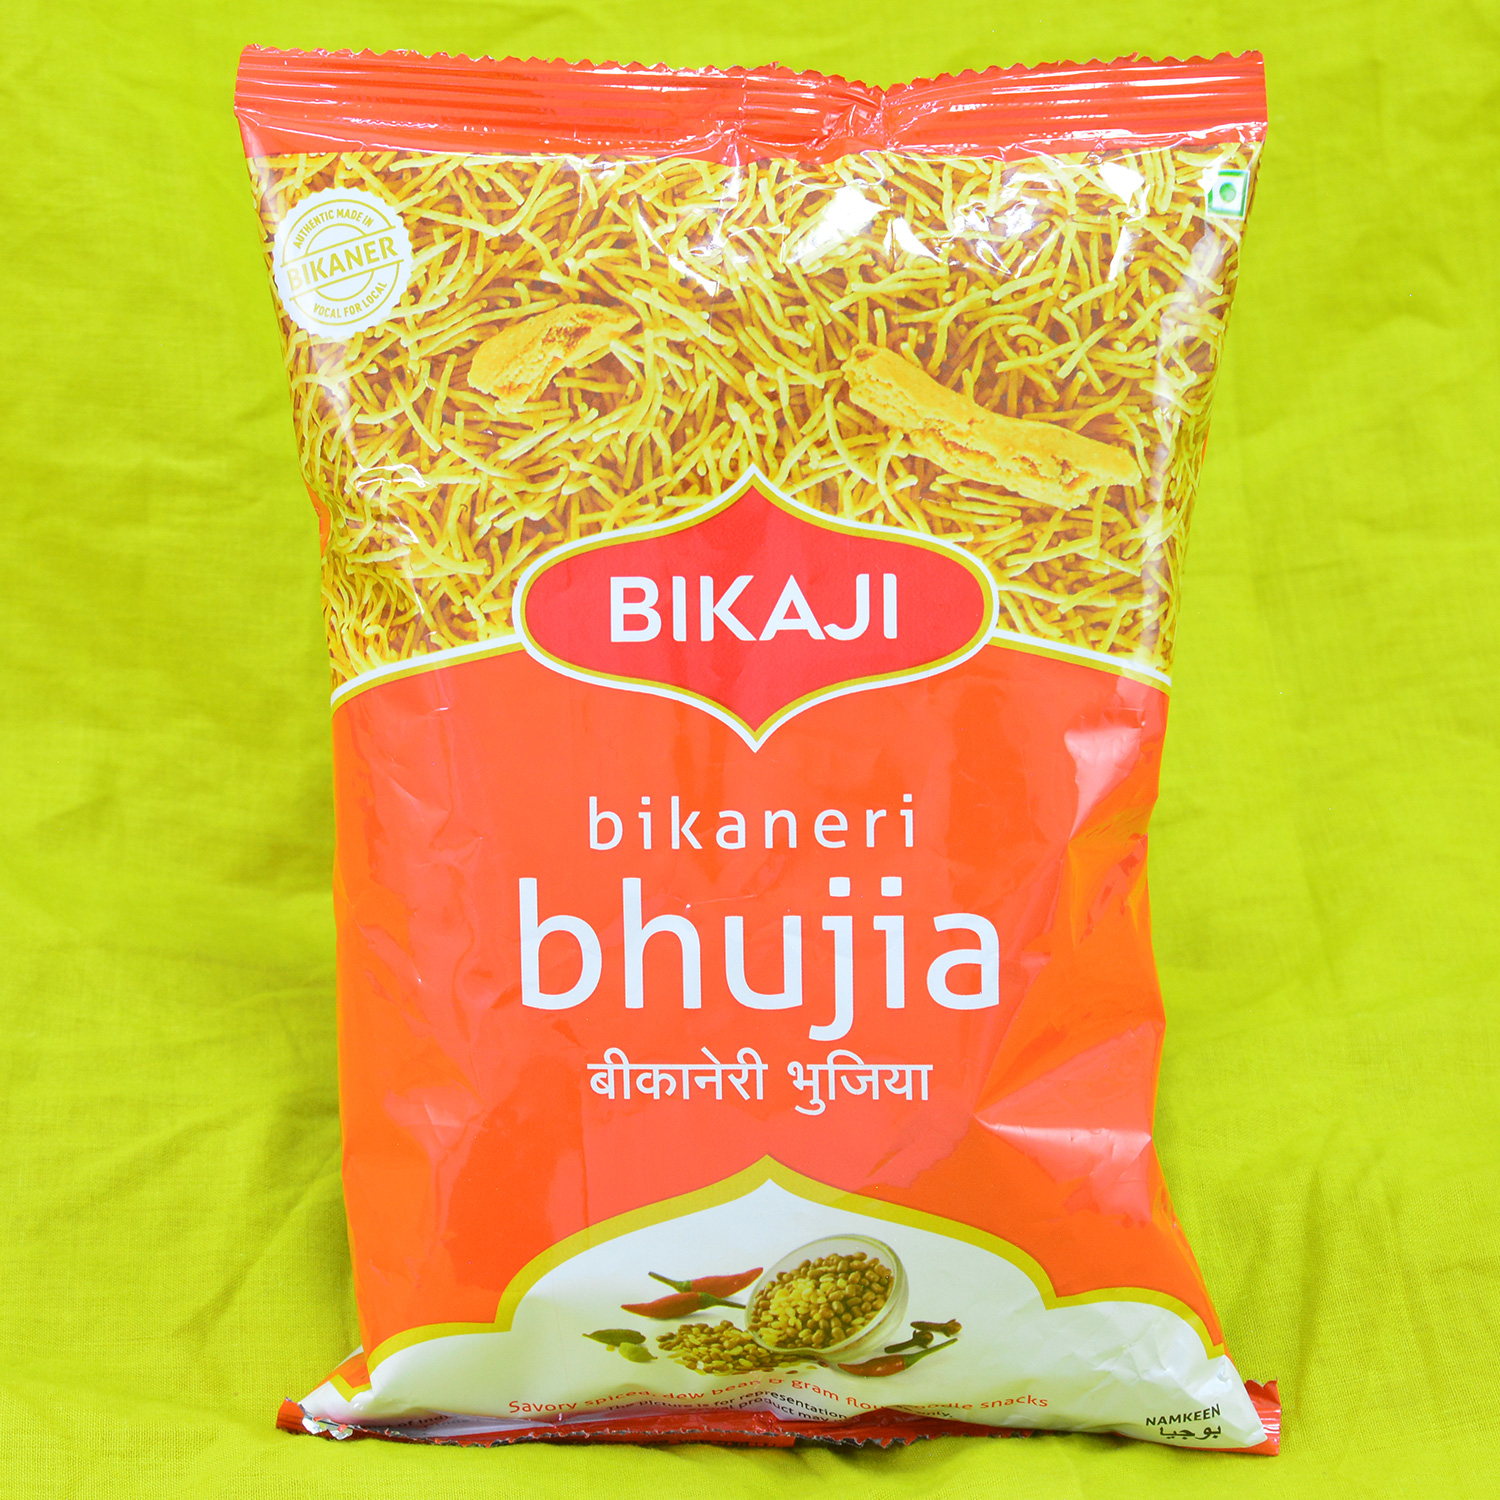 Buy Bikaji Aslee Bikaneri - Rakhi Gift Combo | Simple Bhai Rakhi | Mango  Chocolate Burfi 250 Gm | Raksha Bandhan Gift Online at Best Prices in India  - JioMart.